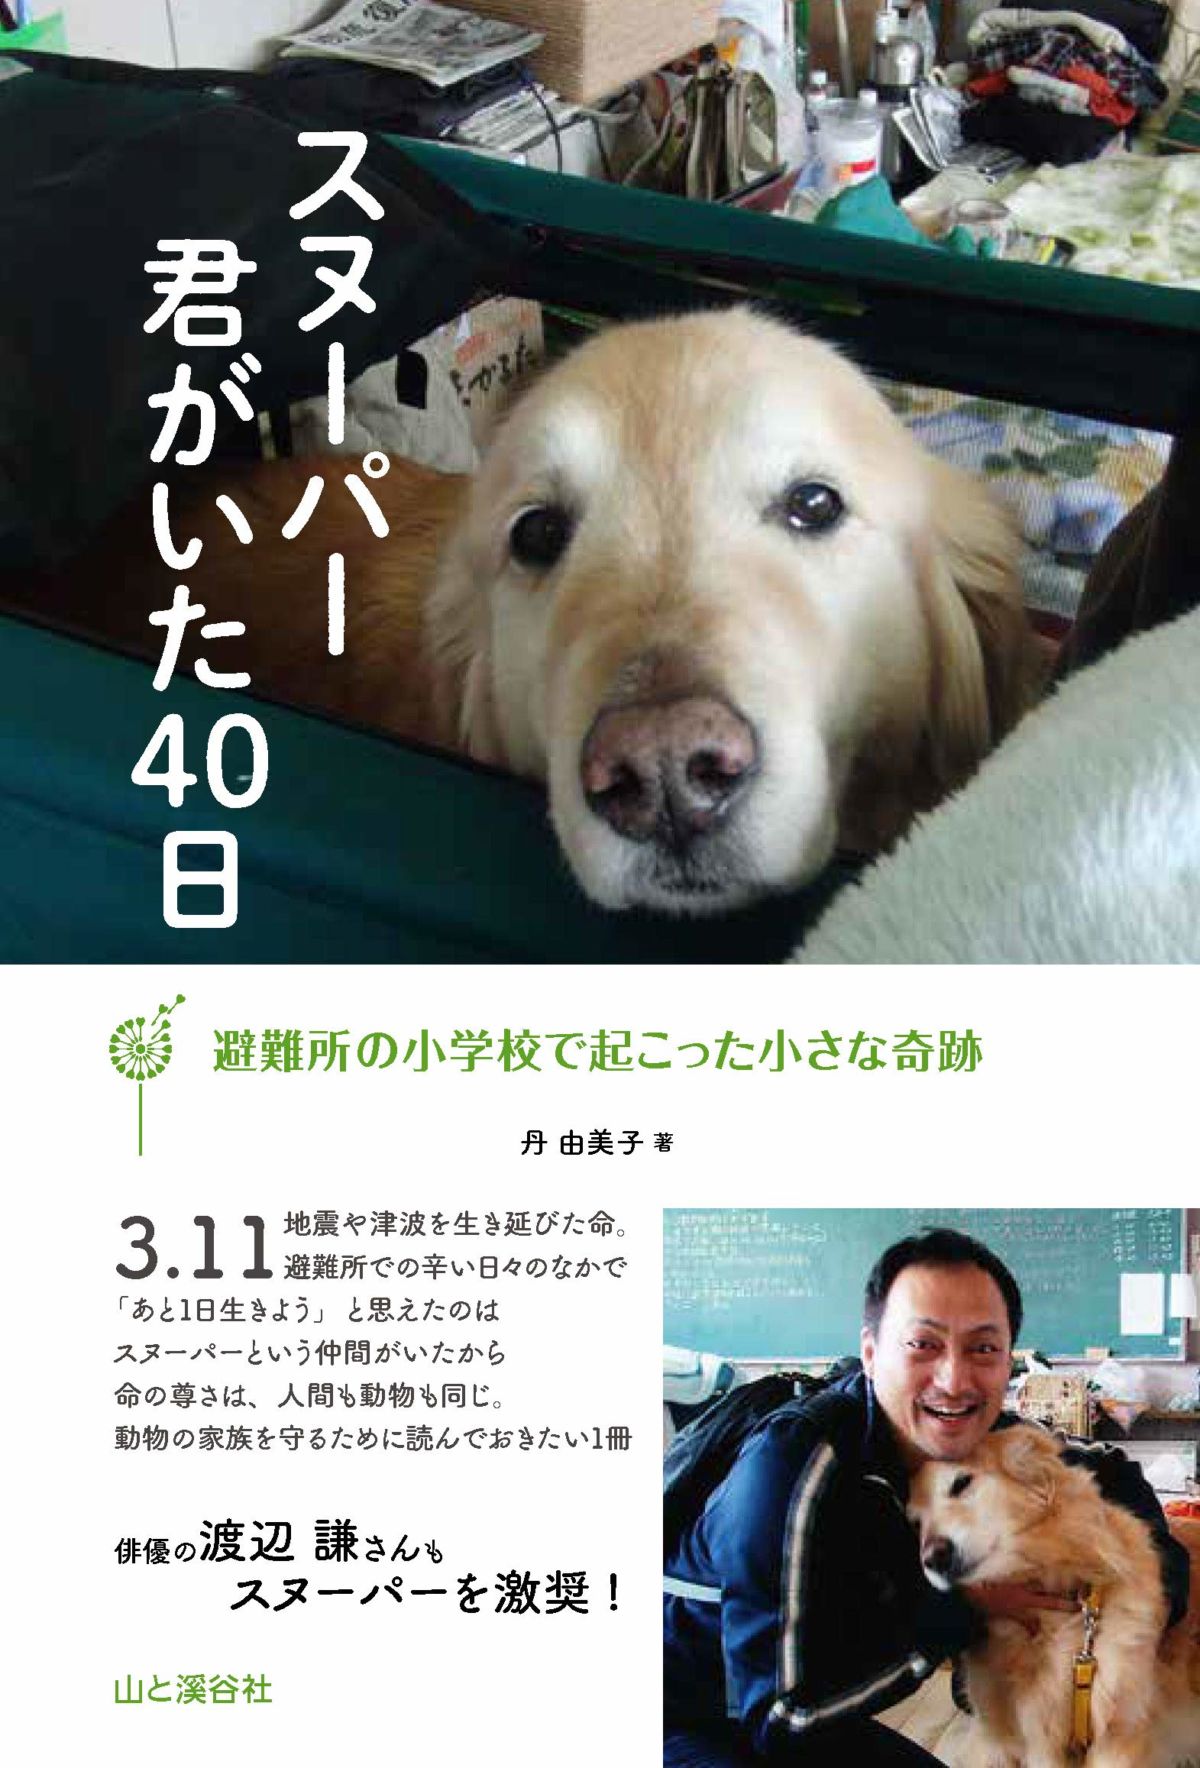 東日本大震災の避難所の小学校で起こった奇跡 ヘタレでシャイでみんなから愛された犬スヌーパーの40日 ダ ヴィンチニュース